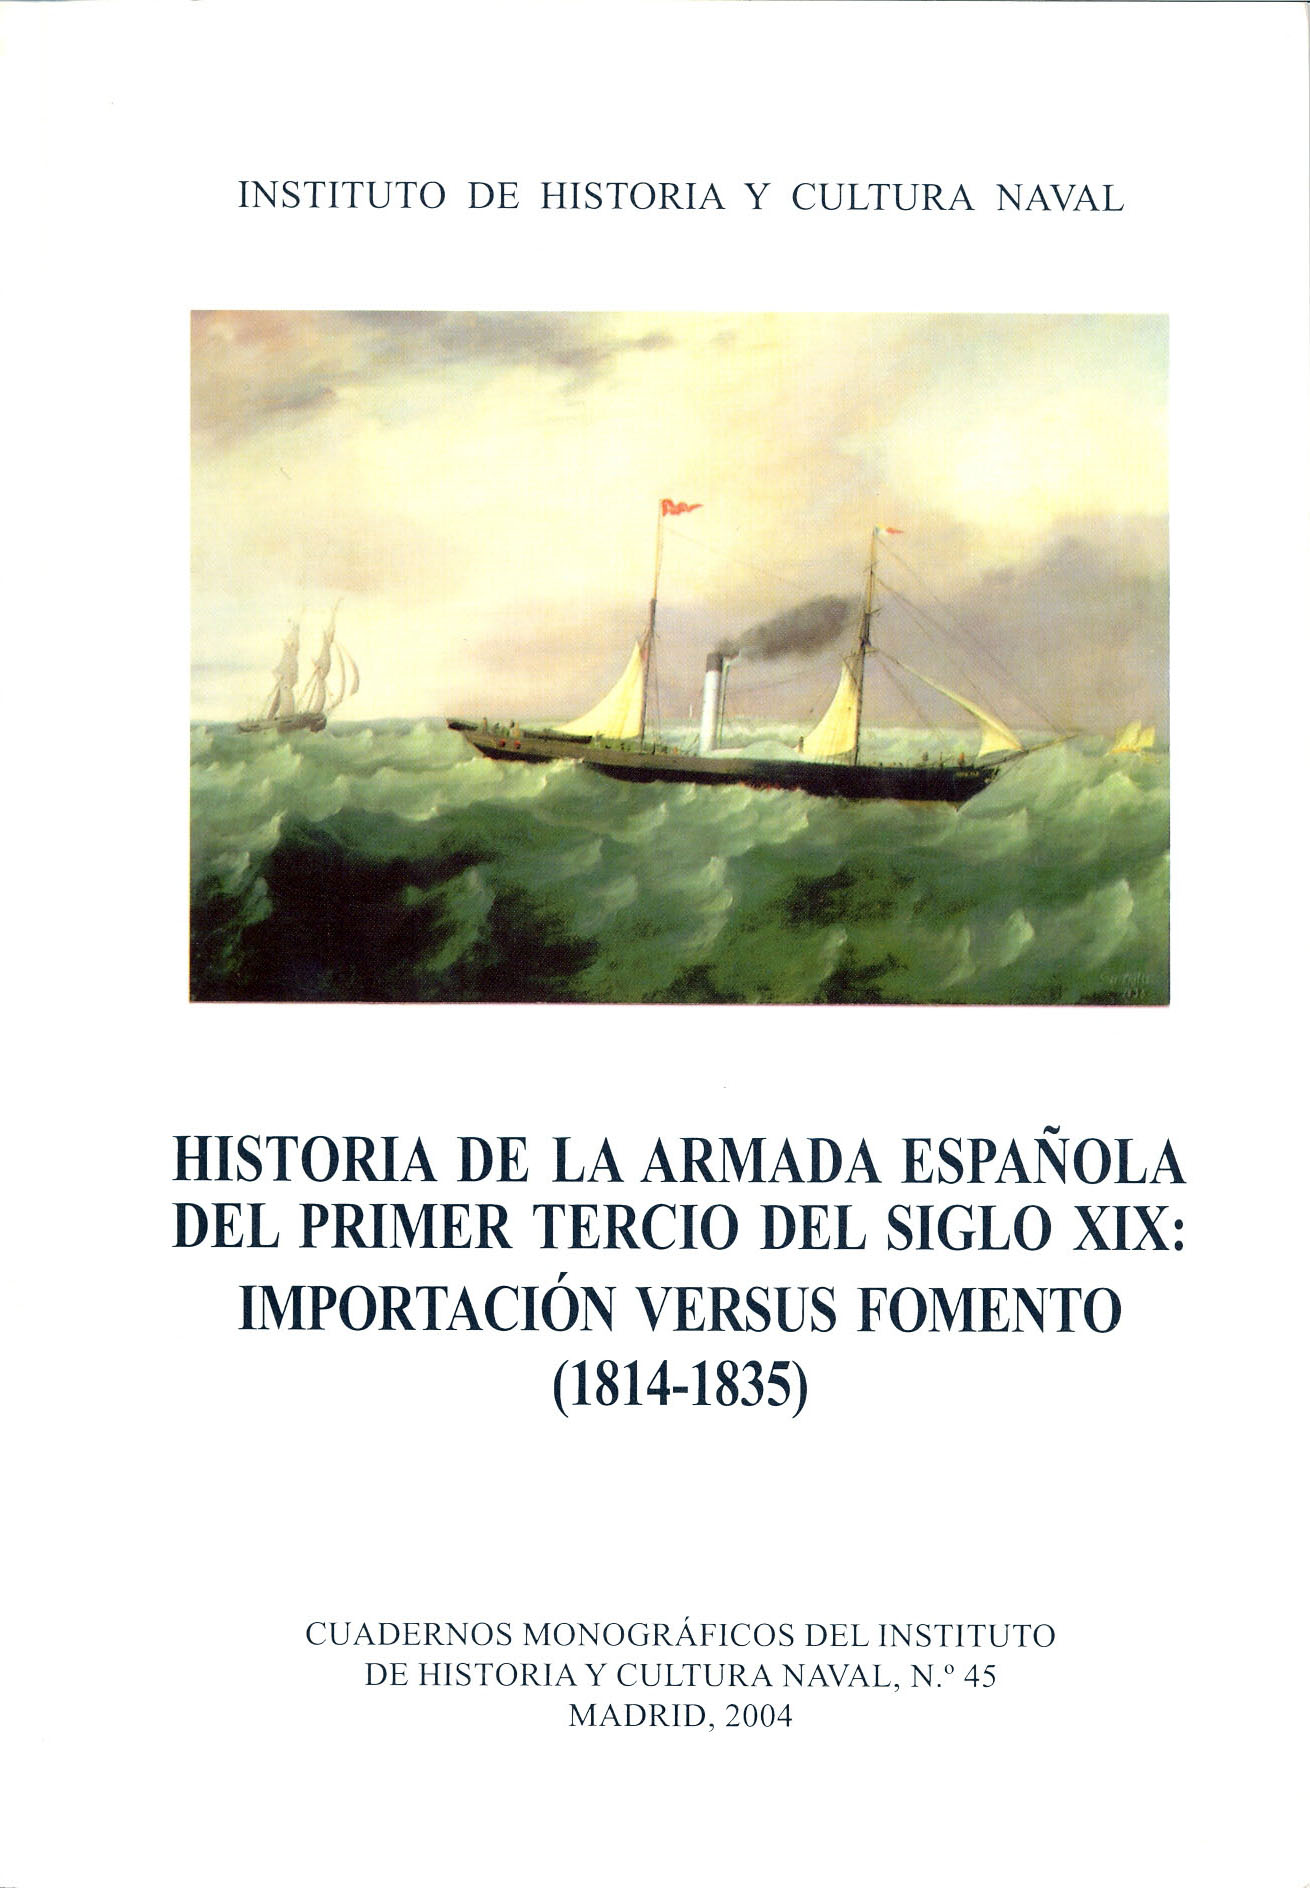 Historia de la Armada española del primer tercio del siglo XIX: importación versus fomento (1814-1835)